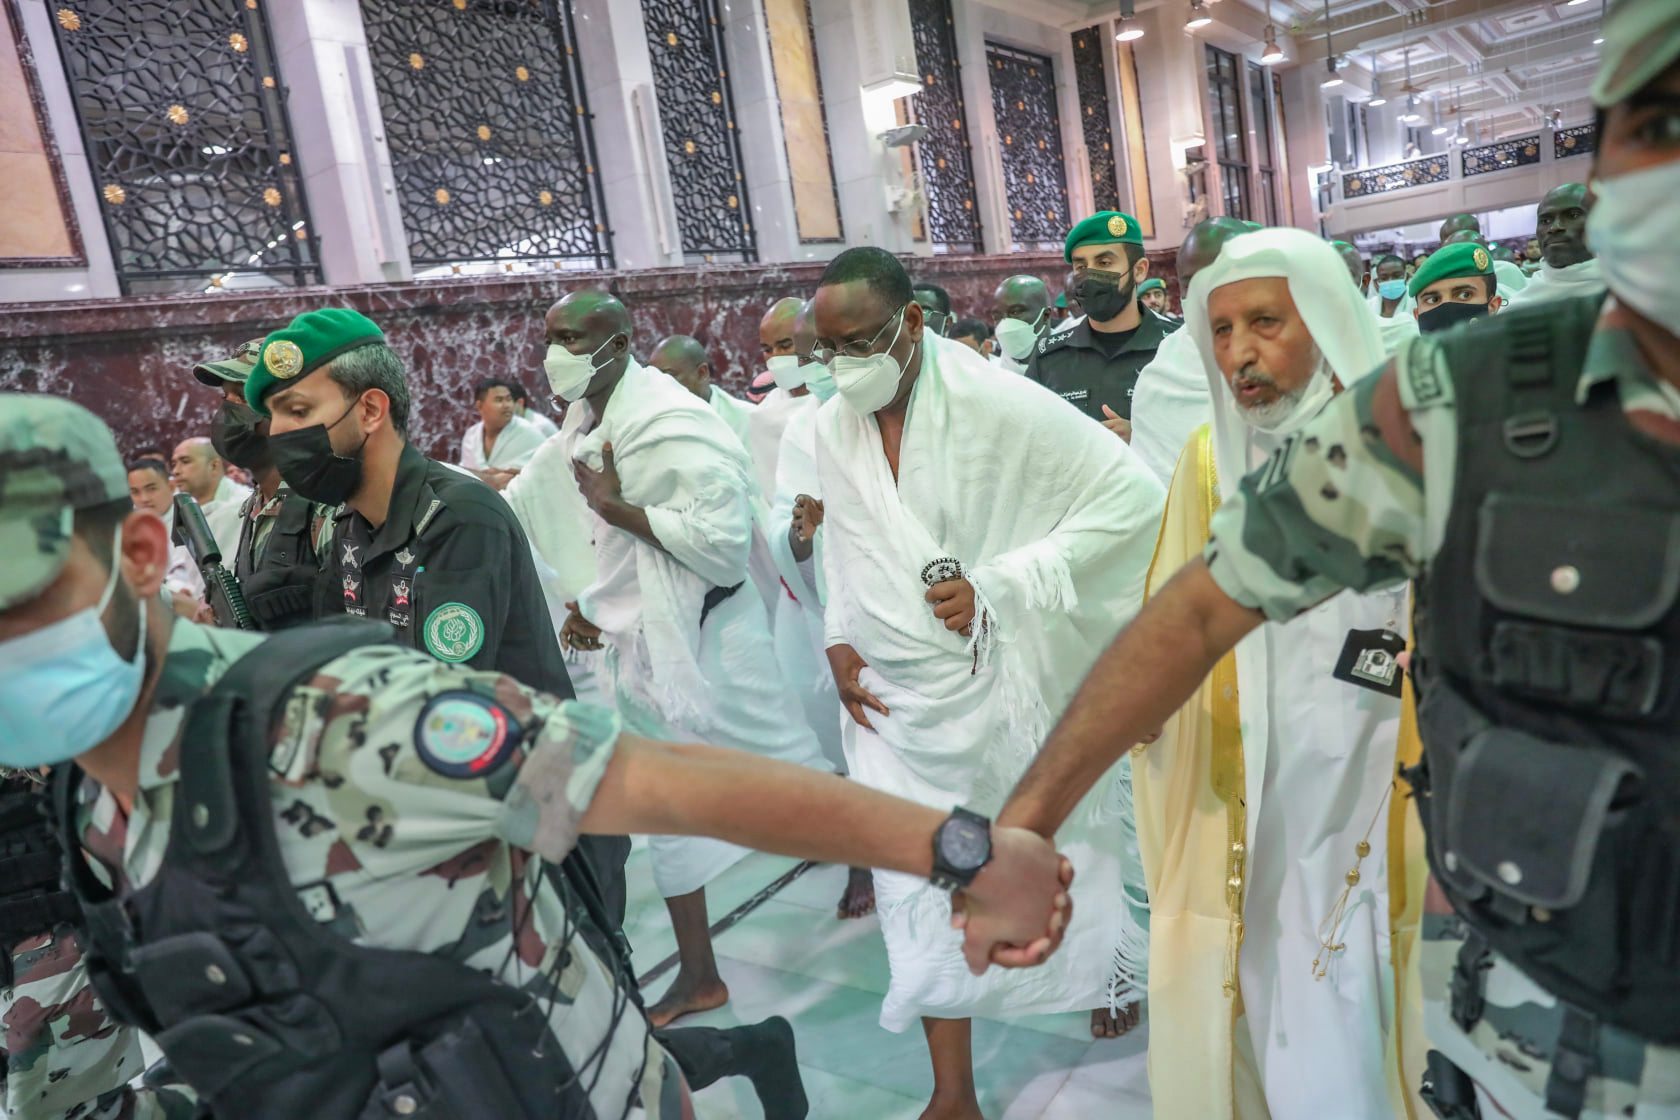 Macky SALL a effectué la Oumra (petit pèlerinage) à la Mecque